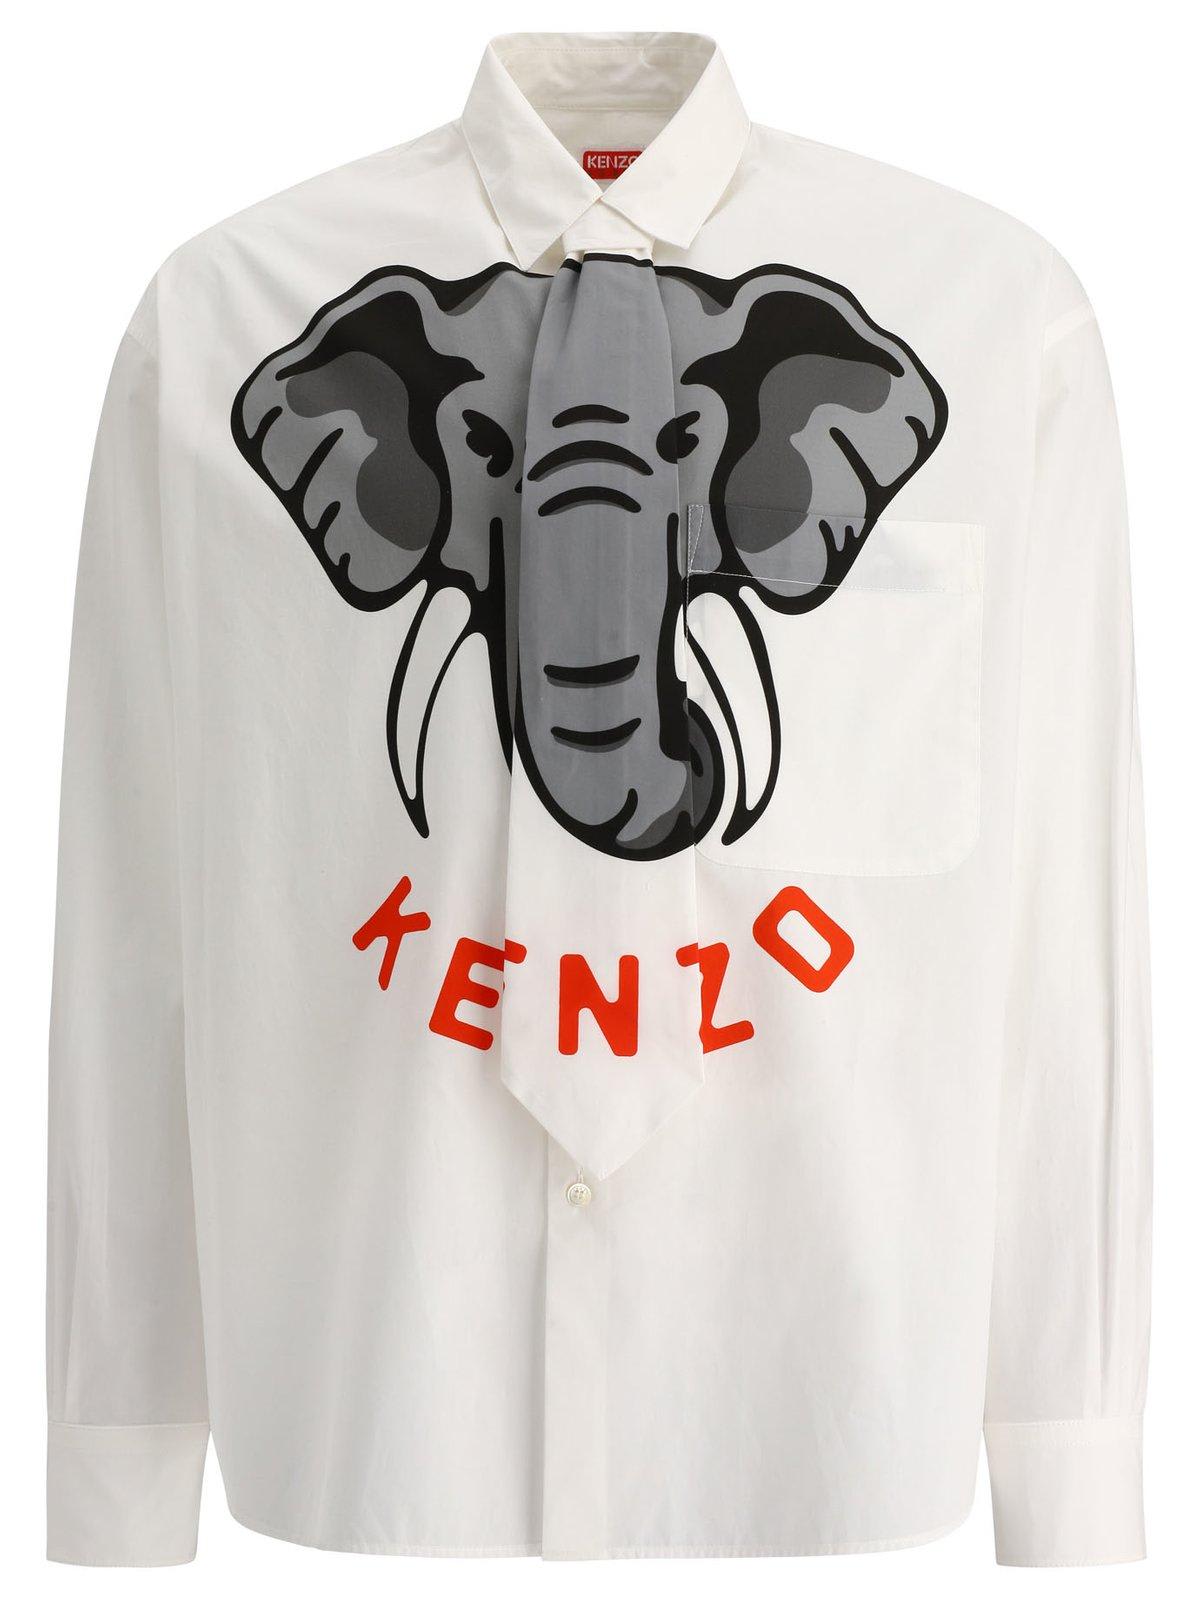 KENZO ELEPHANT PRINTED T-SHIRT